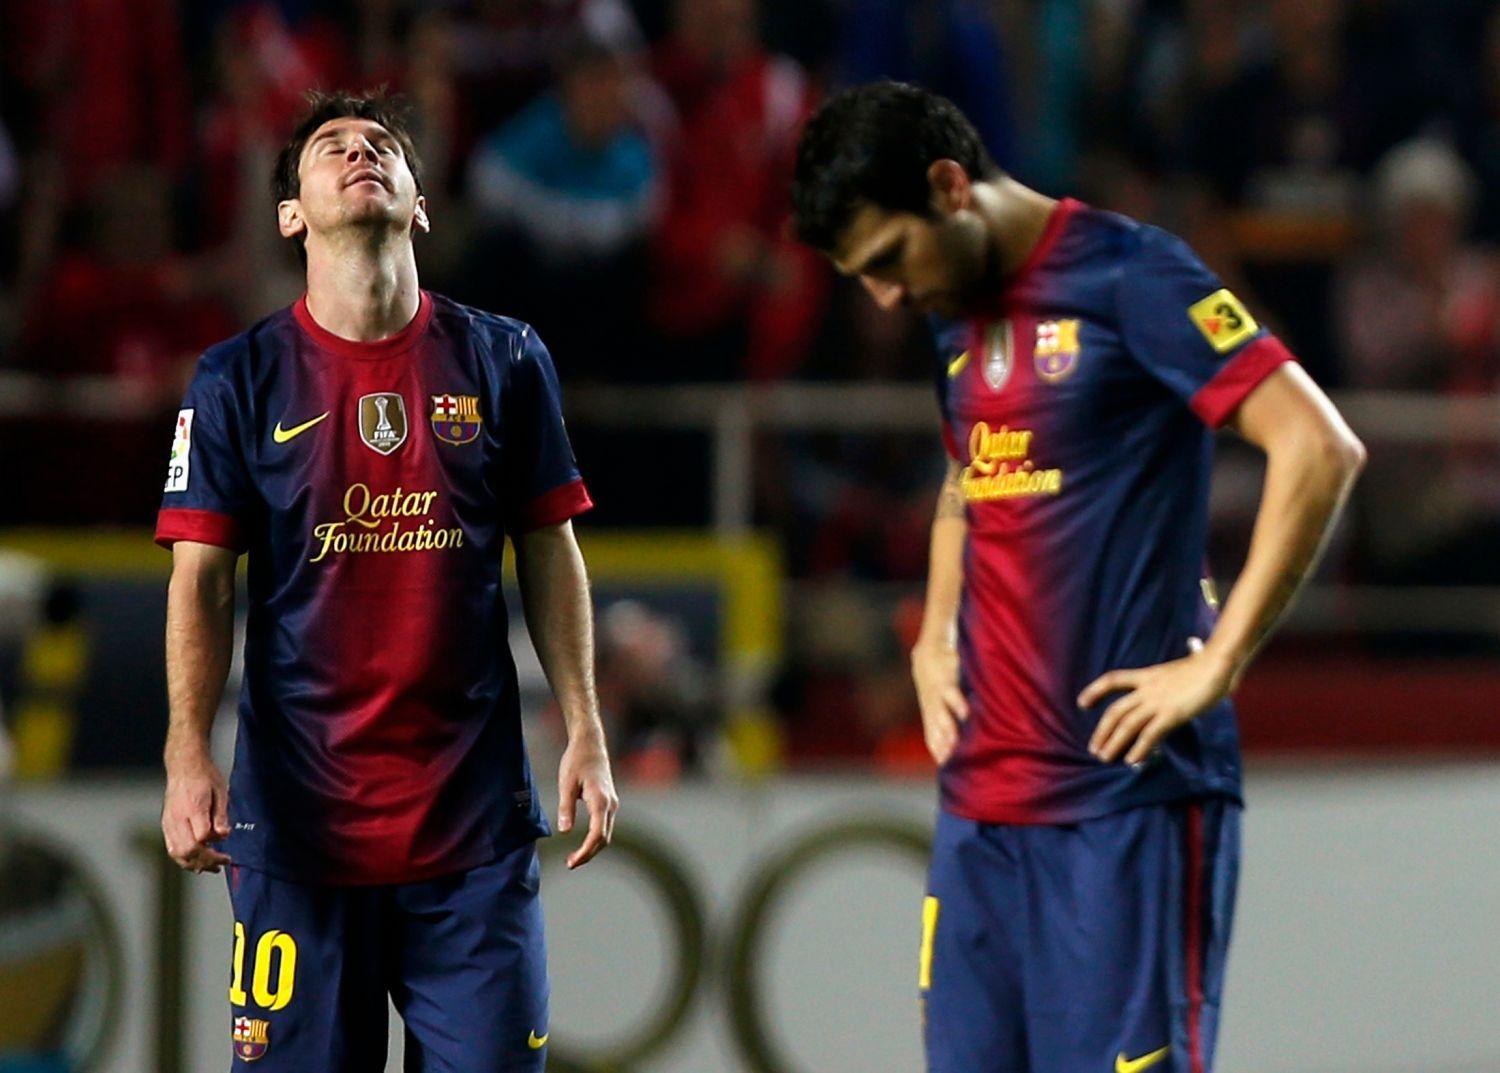 Fotbalisté Barcelony Lionel Messi a Cesc Fabregas po inkasovaném gólu v utkání španělské La Ligy 2012/13 se Sevillou.